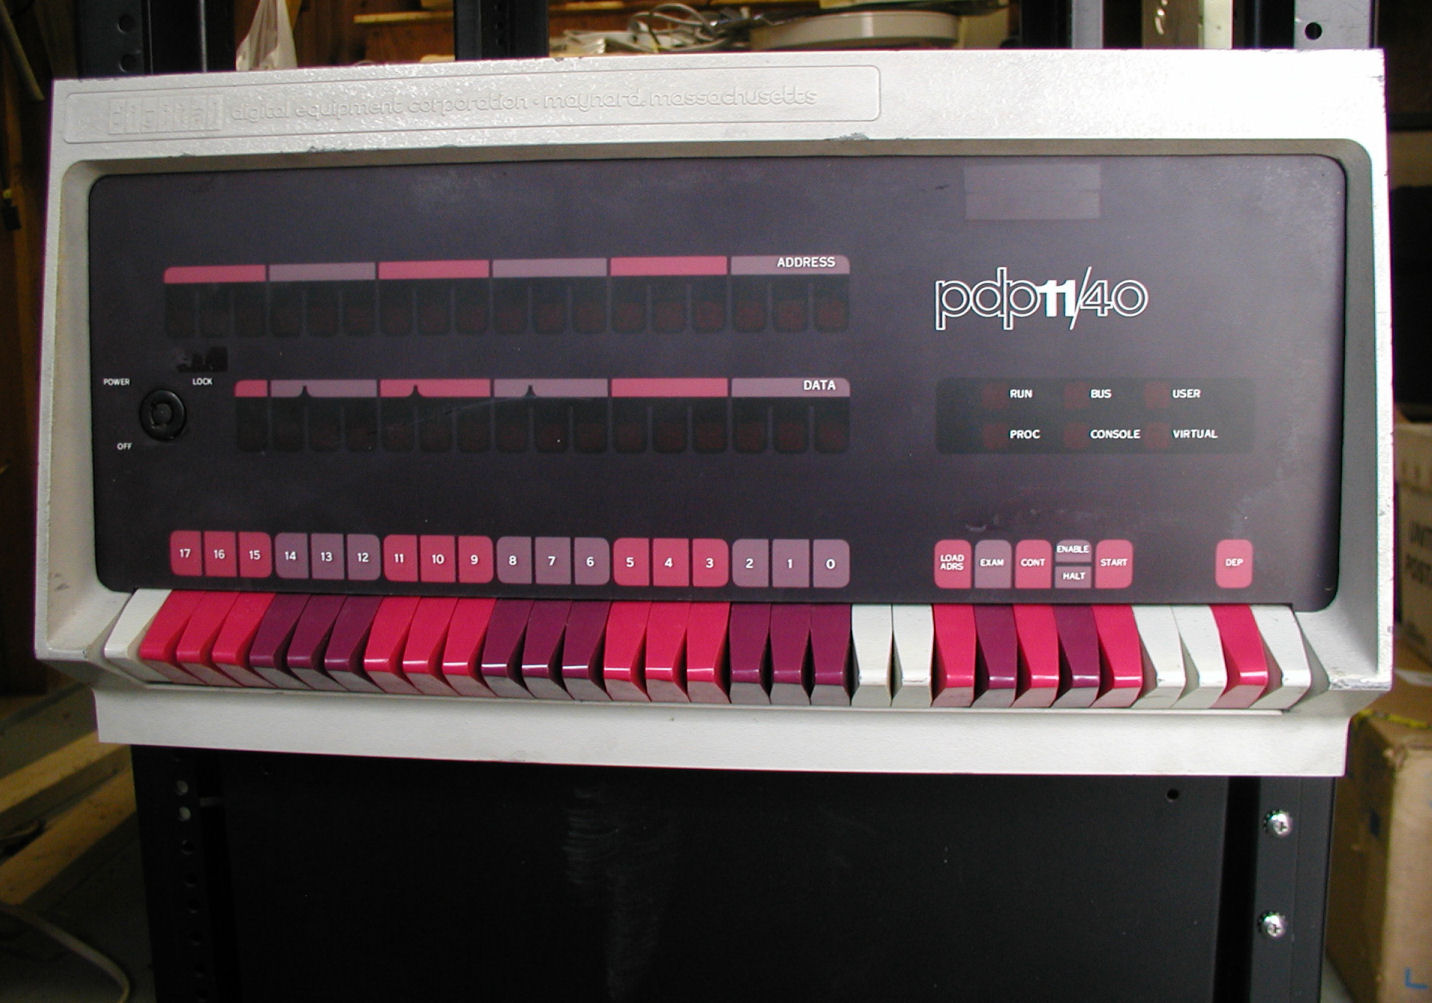 PDP11-40_fontpanel.JPG